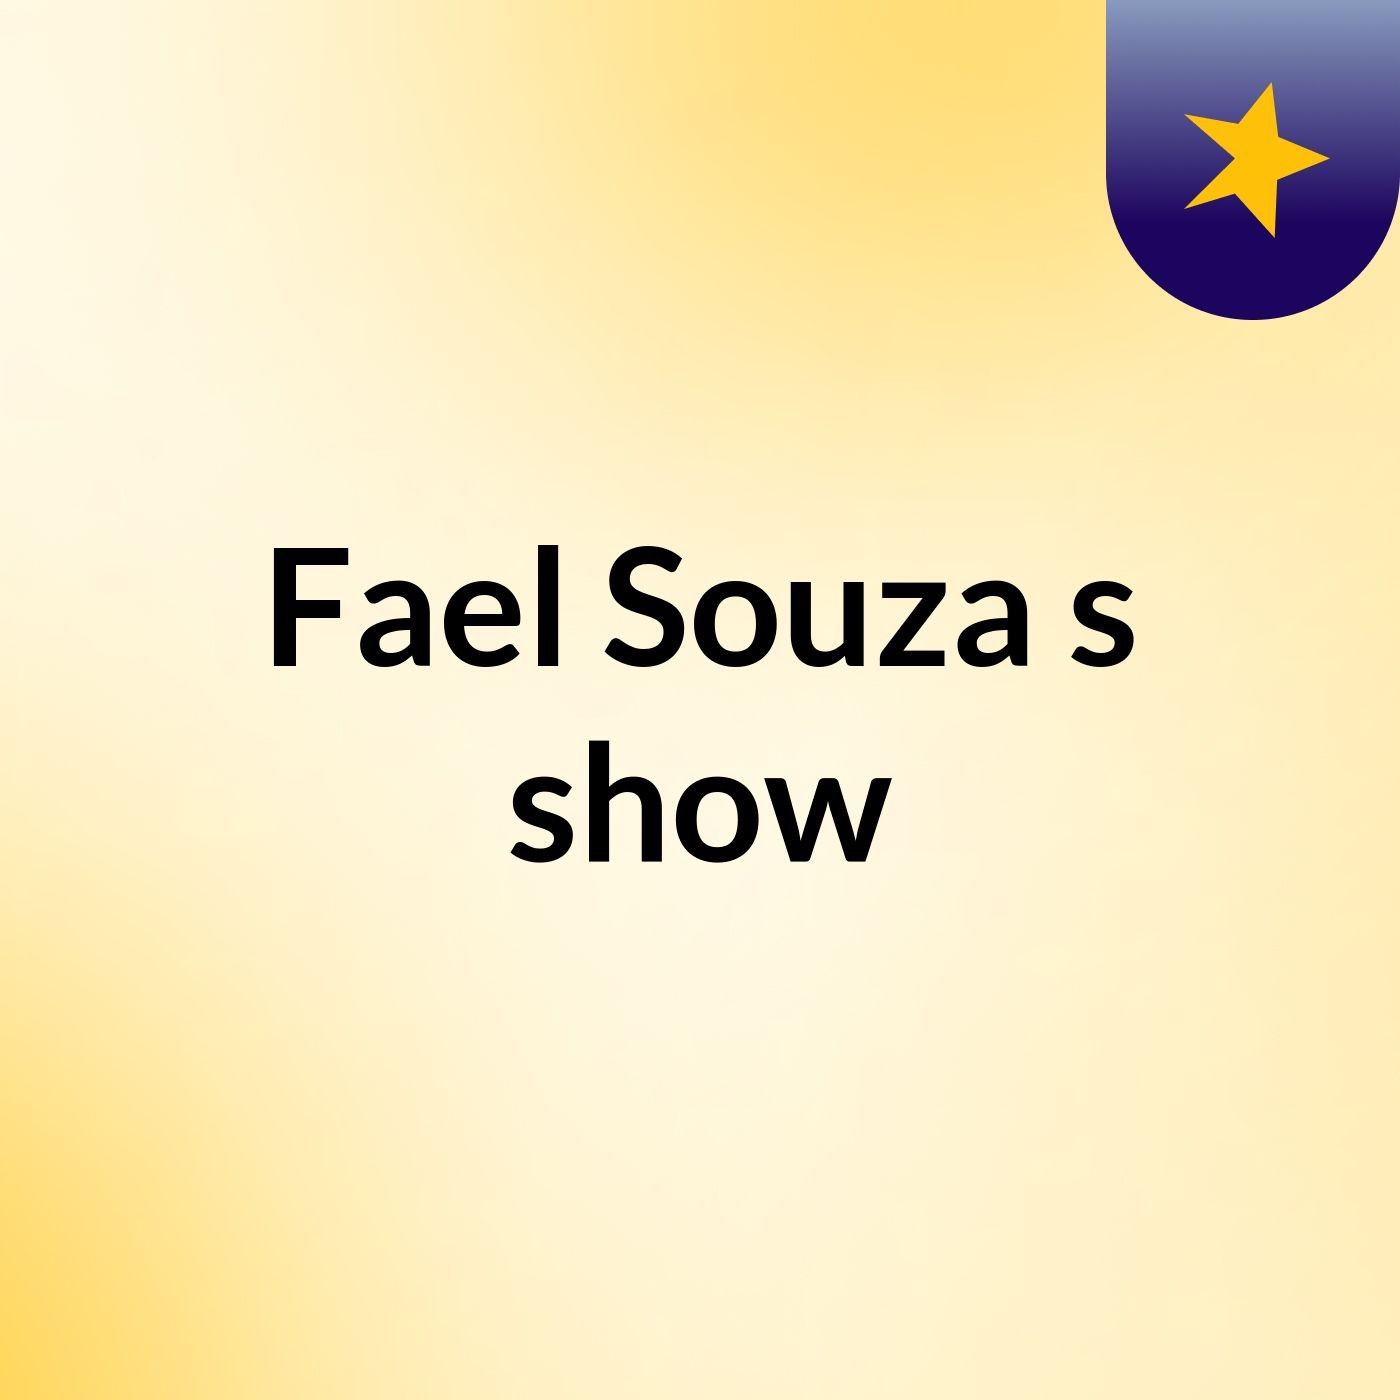 Fael Souza's show